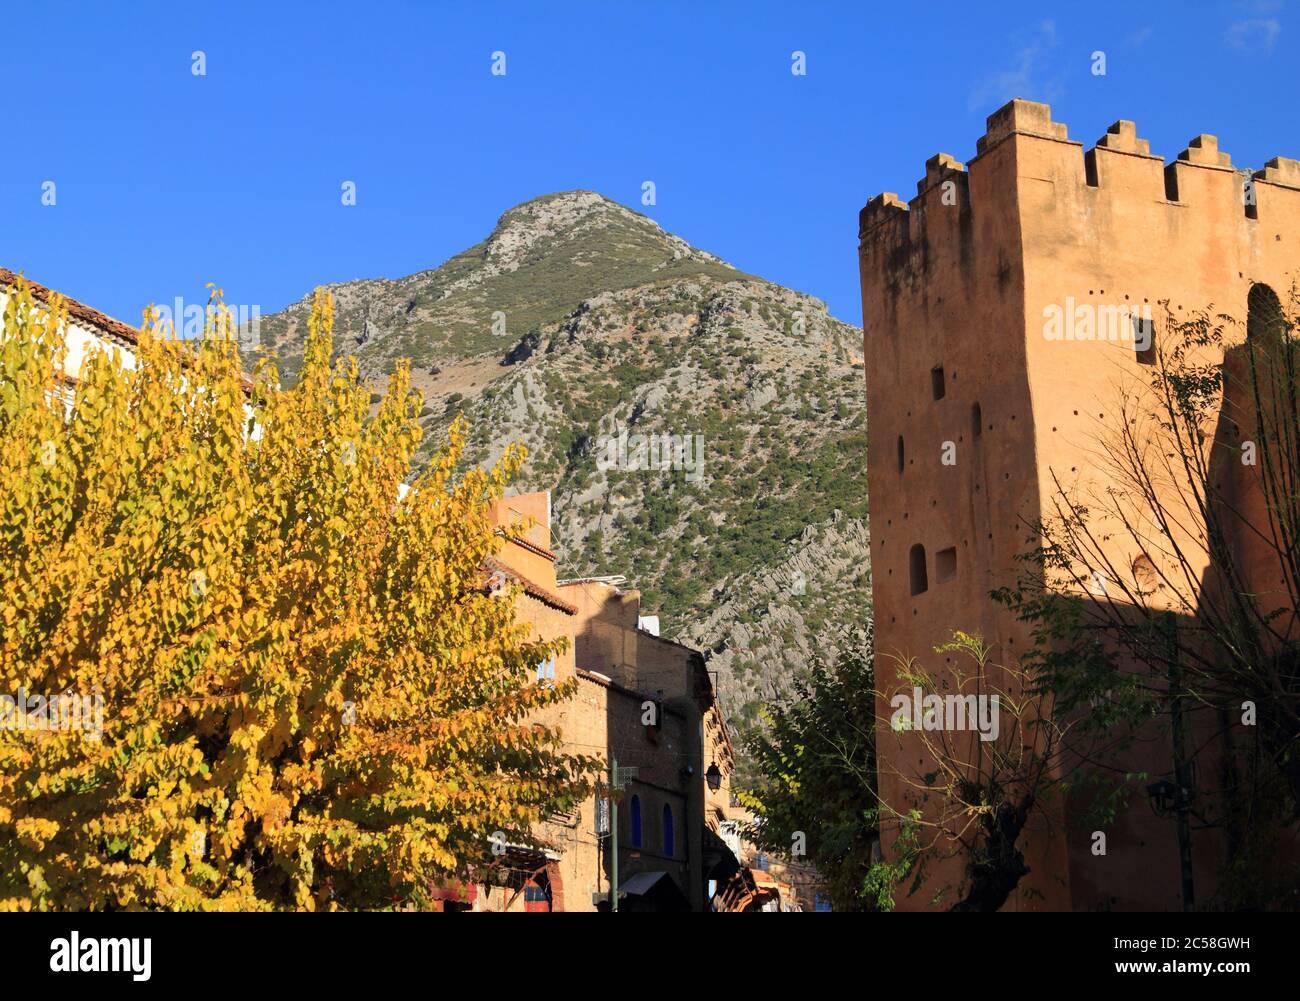 Tour et remparts dans la médina historique de Chefchaouen, Maroc. RIF montagnes en arrière-plan. Banque D'Images